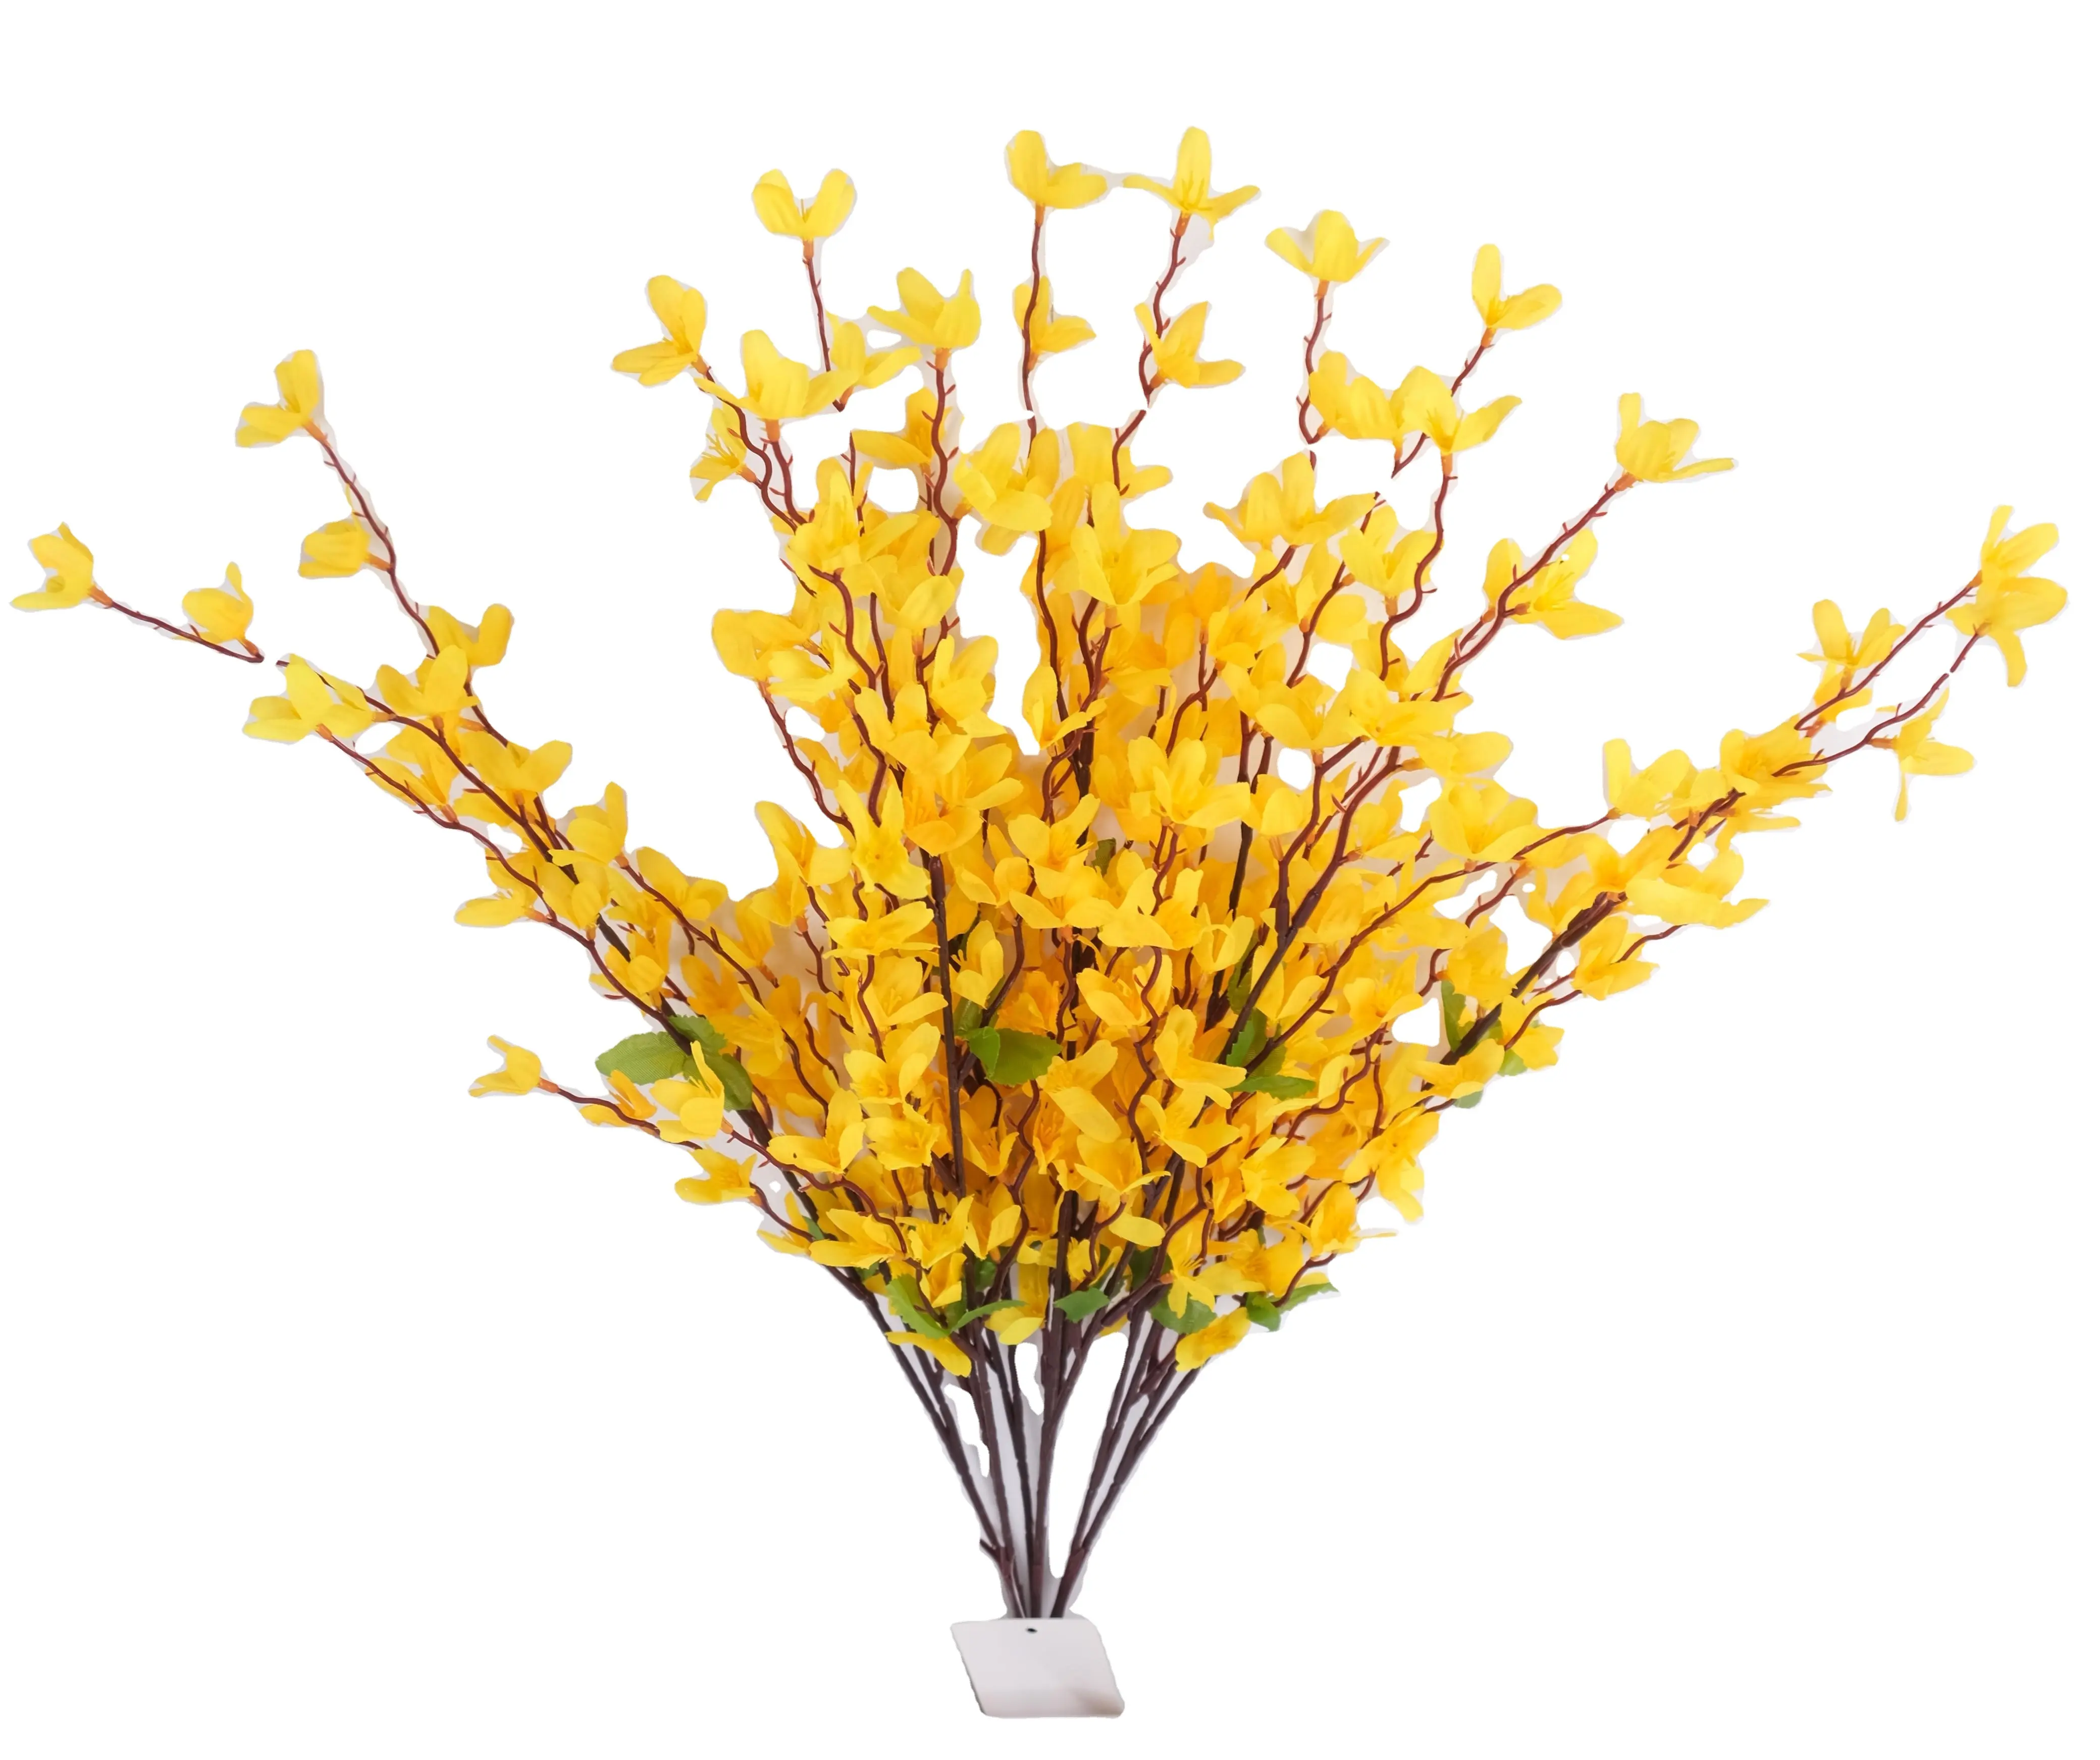 Nuovo Design a 7 forcelle multicolore fiore di primavera fiori decorativi artificiali Wisteria vite decorazione di nozze decorazione